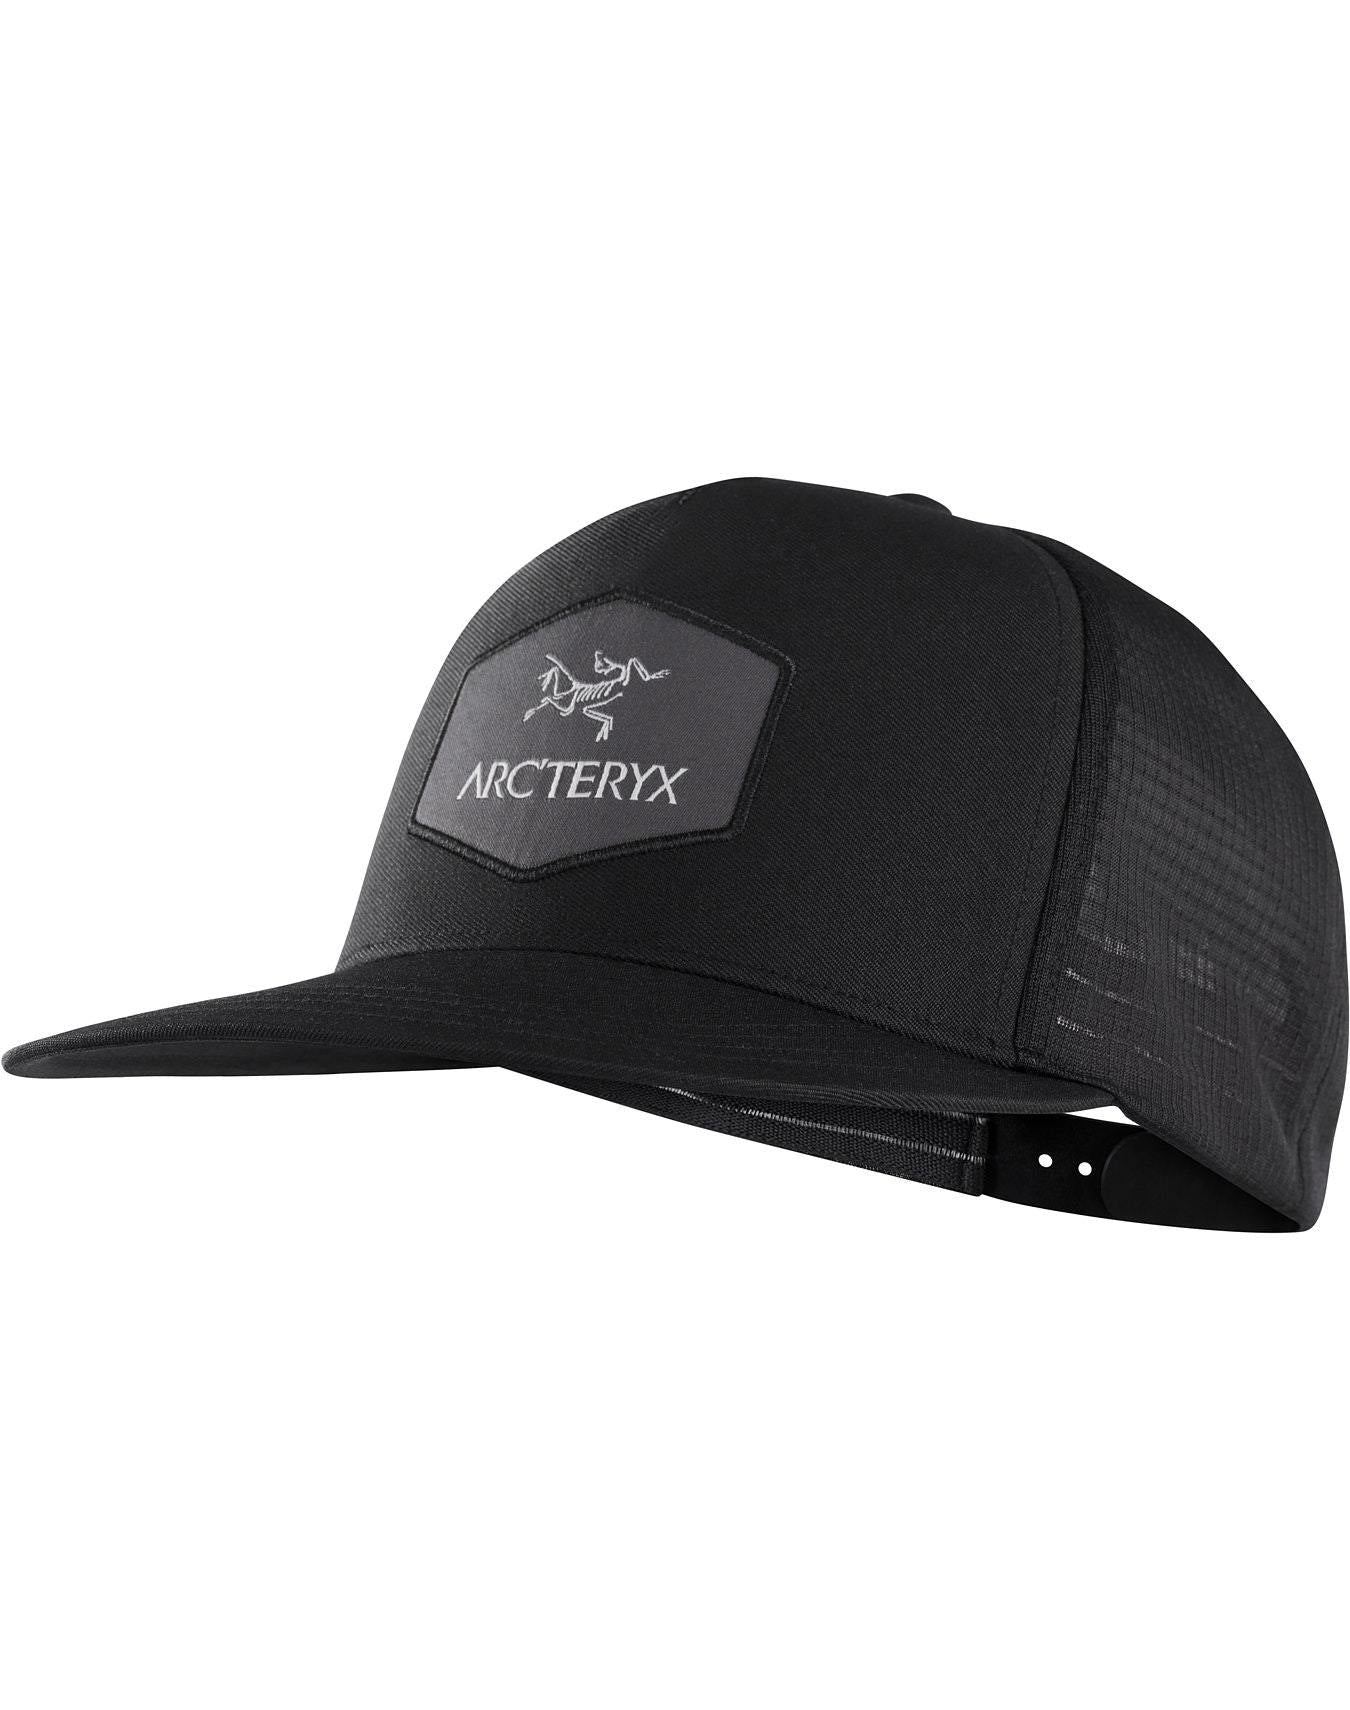 Arcteryx Hexagonal Adult Trucker Hat 2019